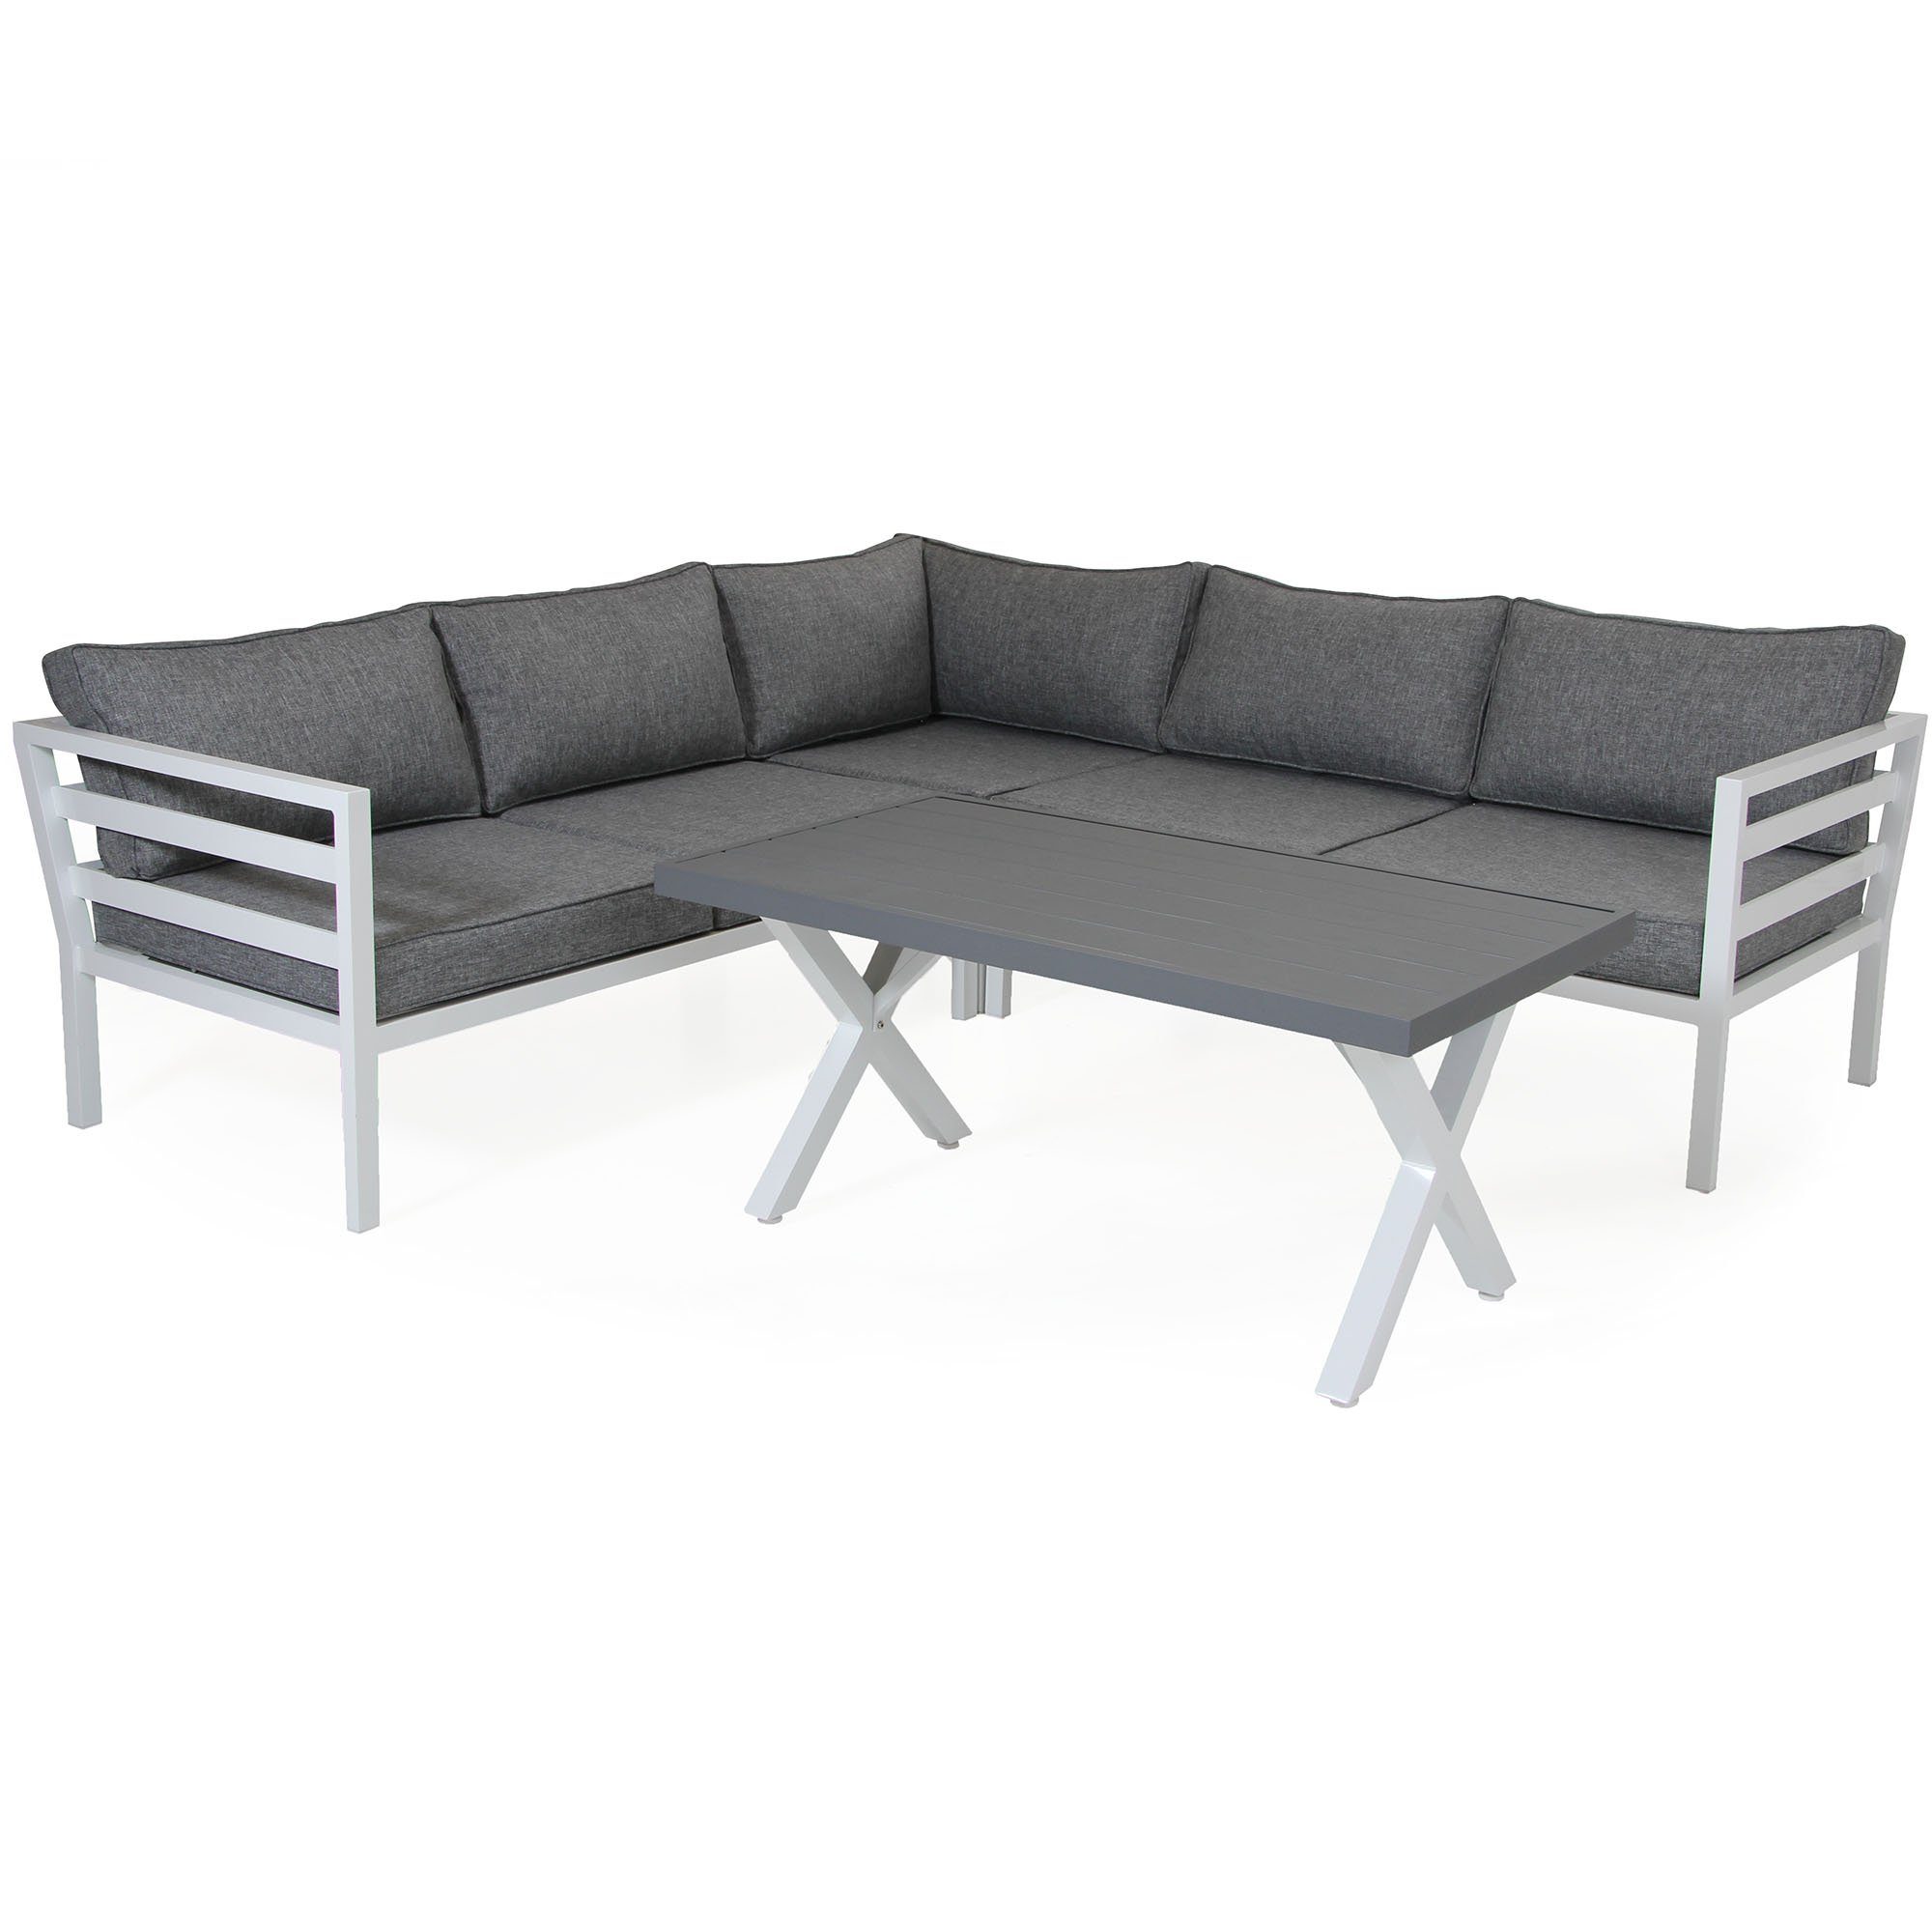 Weldon hörnsoffgrupp från Brafab med soffbord med bordsskiva i antracitgrå matt lackad aluminium.